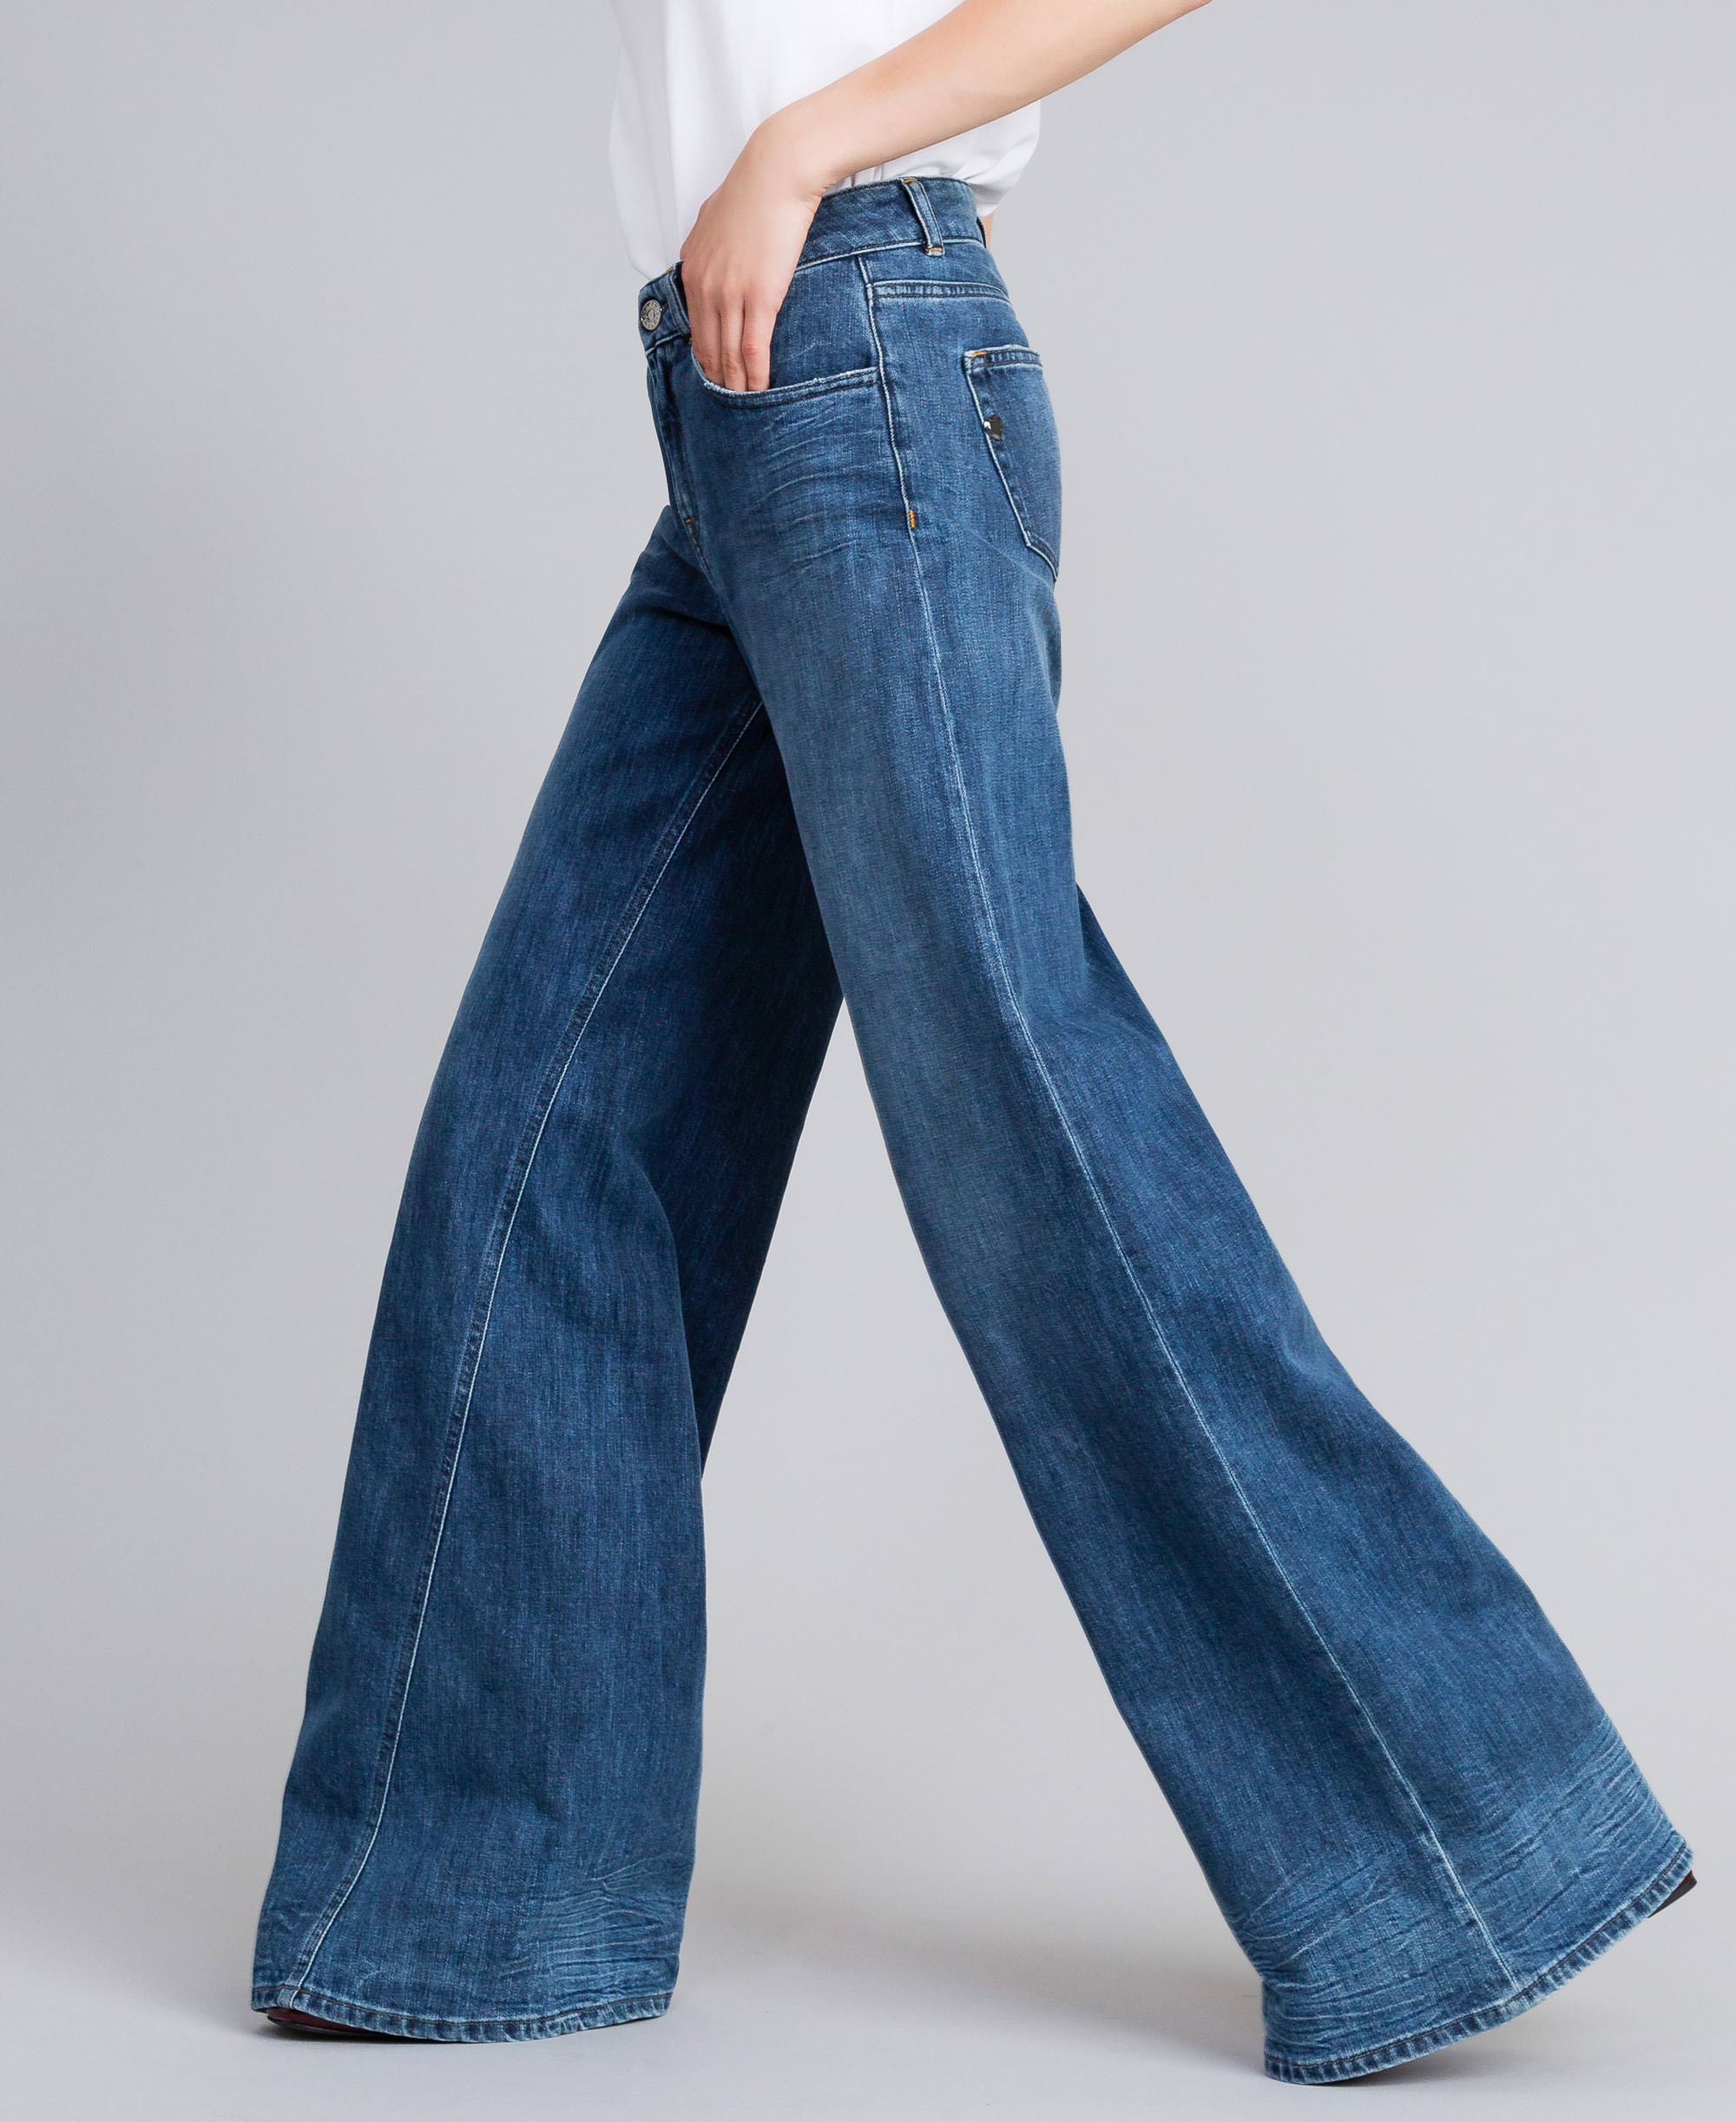 Jeans wide leg in denim